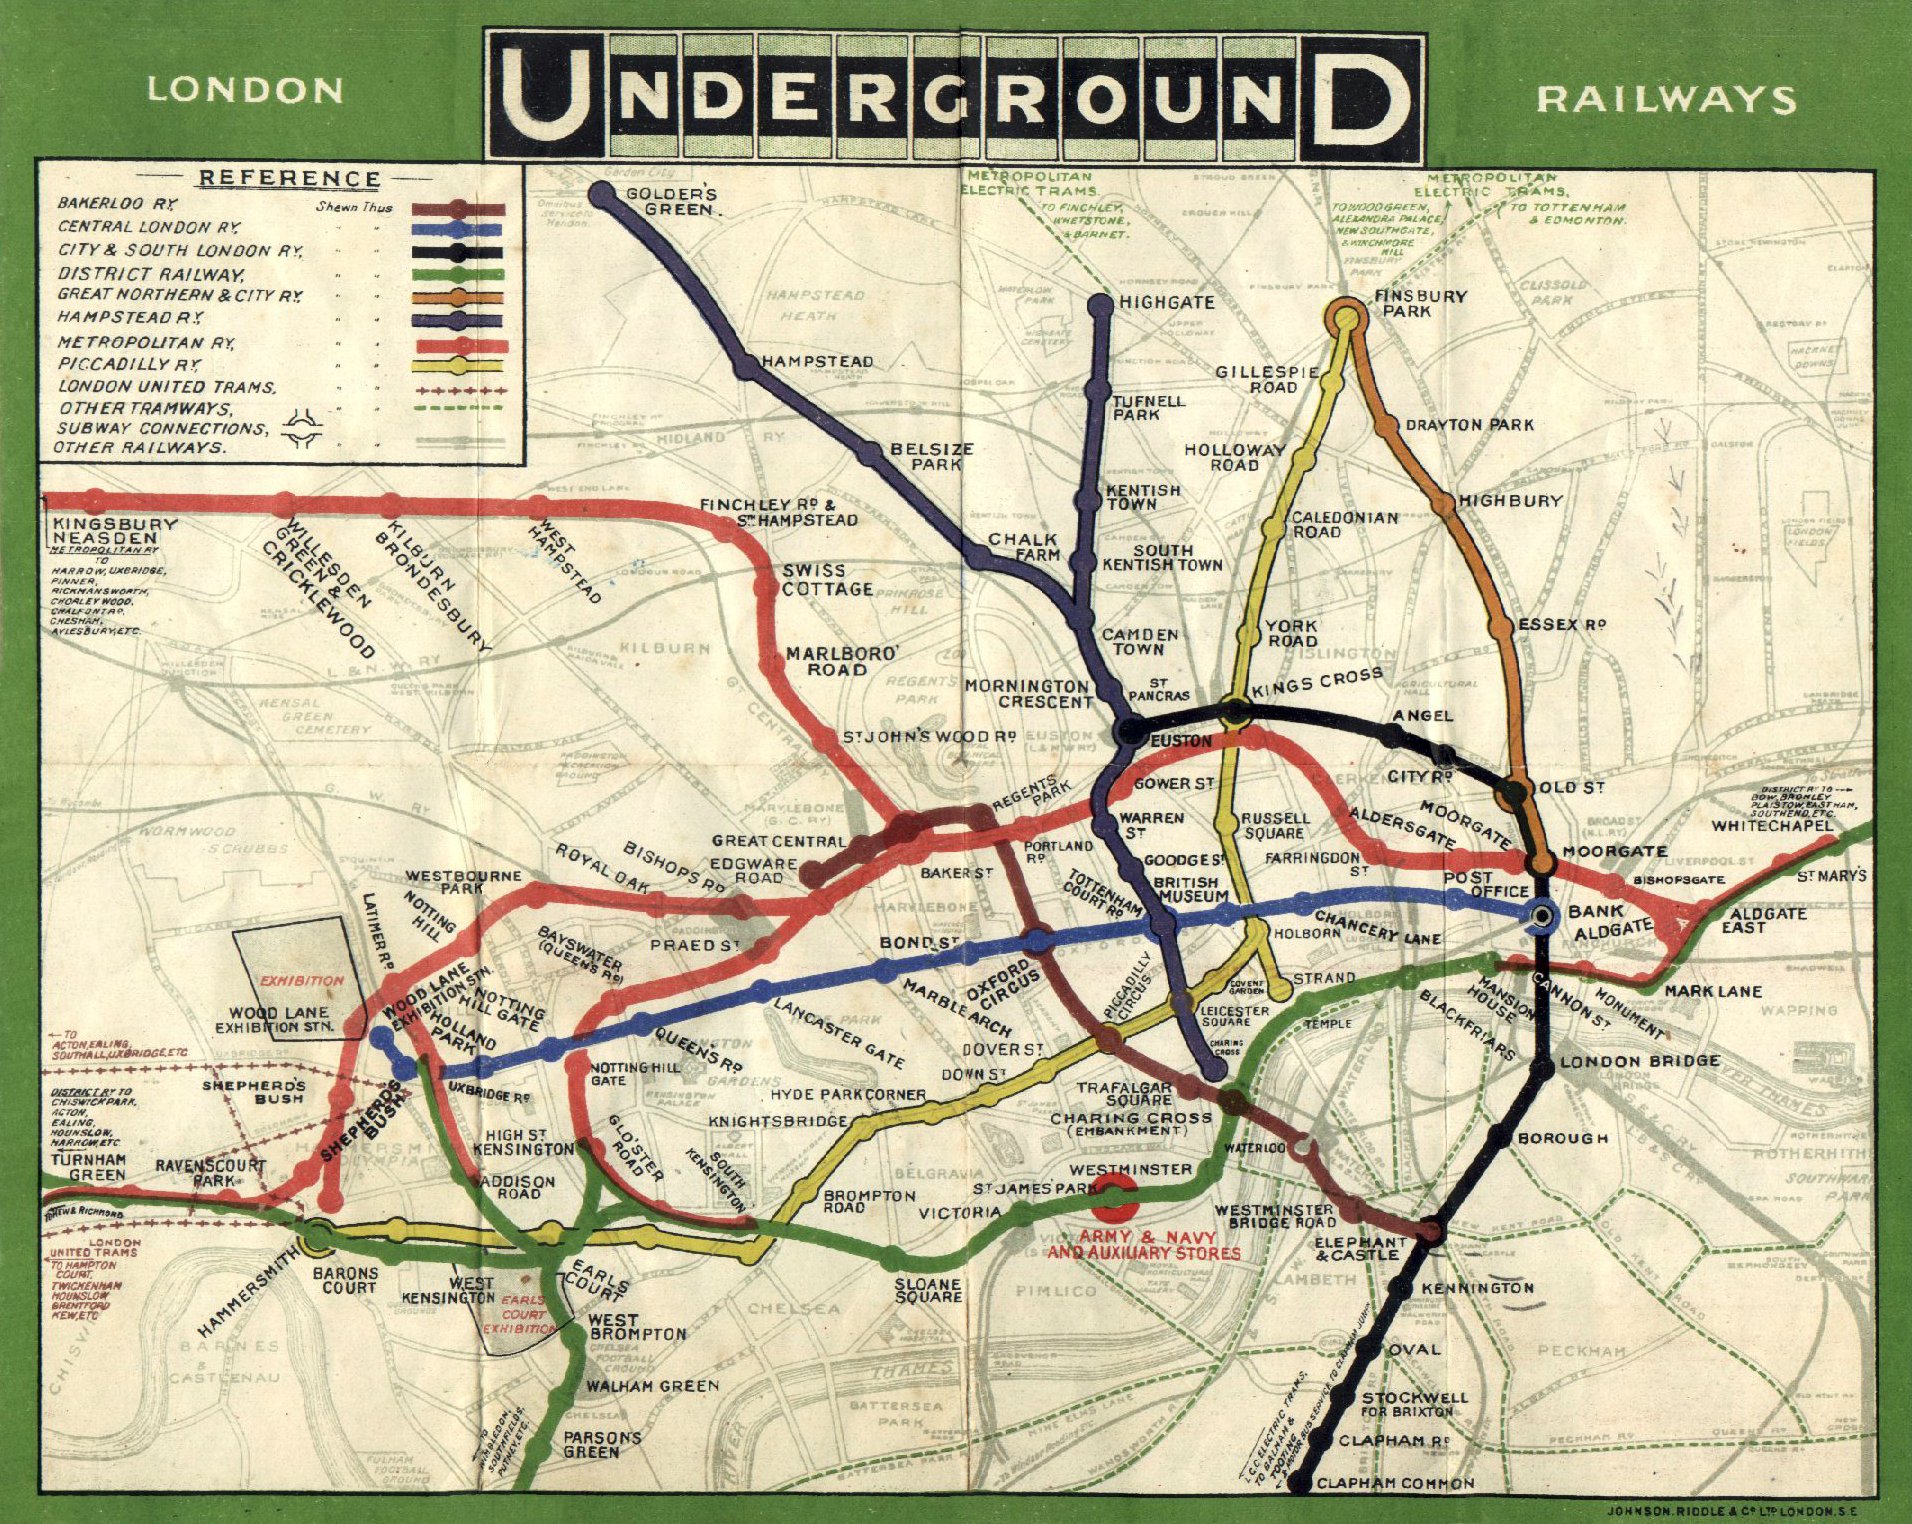 London Underground in 1908